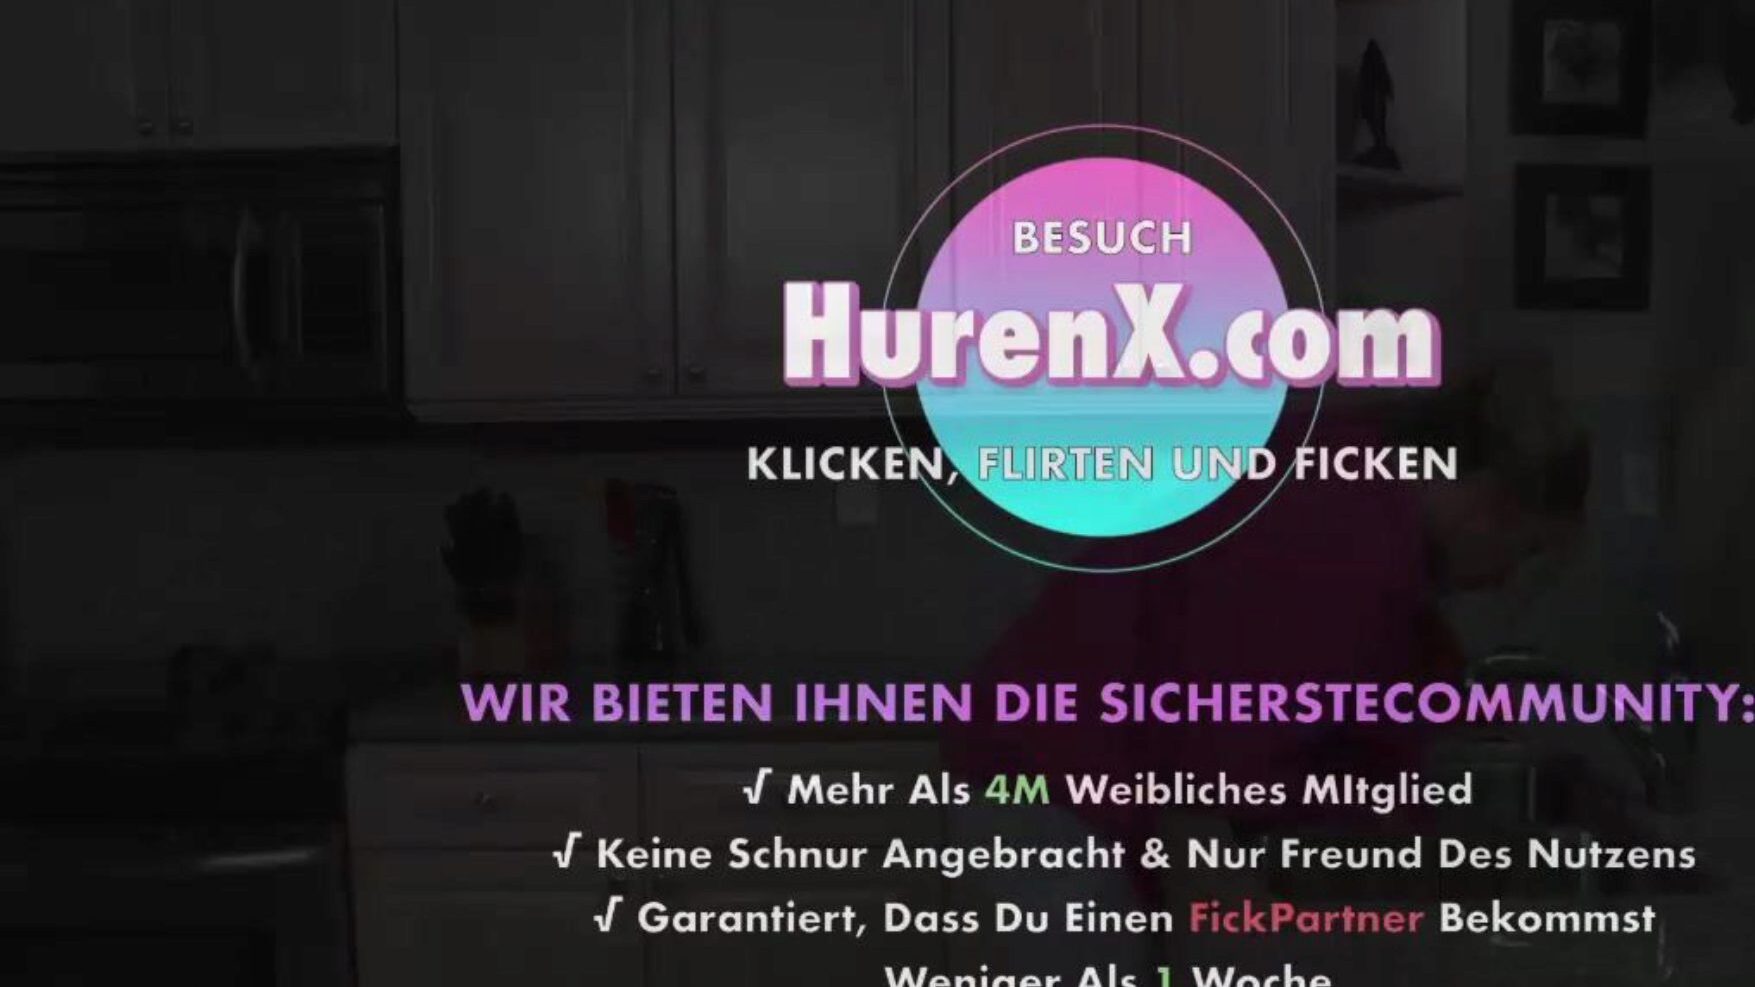 stiefmutter will meine hilfe, kostenlose xnxc porno b5: xhamster gucke stiefmutter will meine hilfe filmische szene auf xhamster, der größten hd fuck-fest rohr website mit tonnenweise kostenlosen deutschen xnxc & mutter deutscher pornografie clips